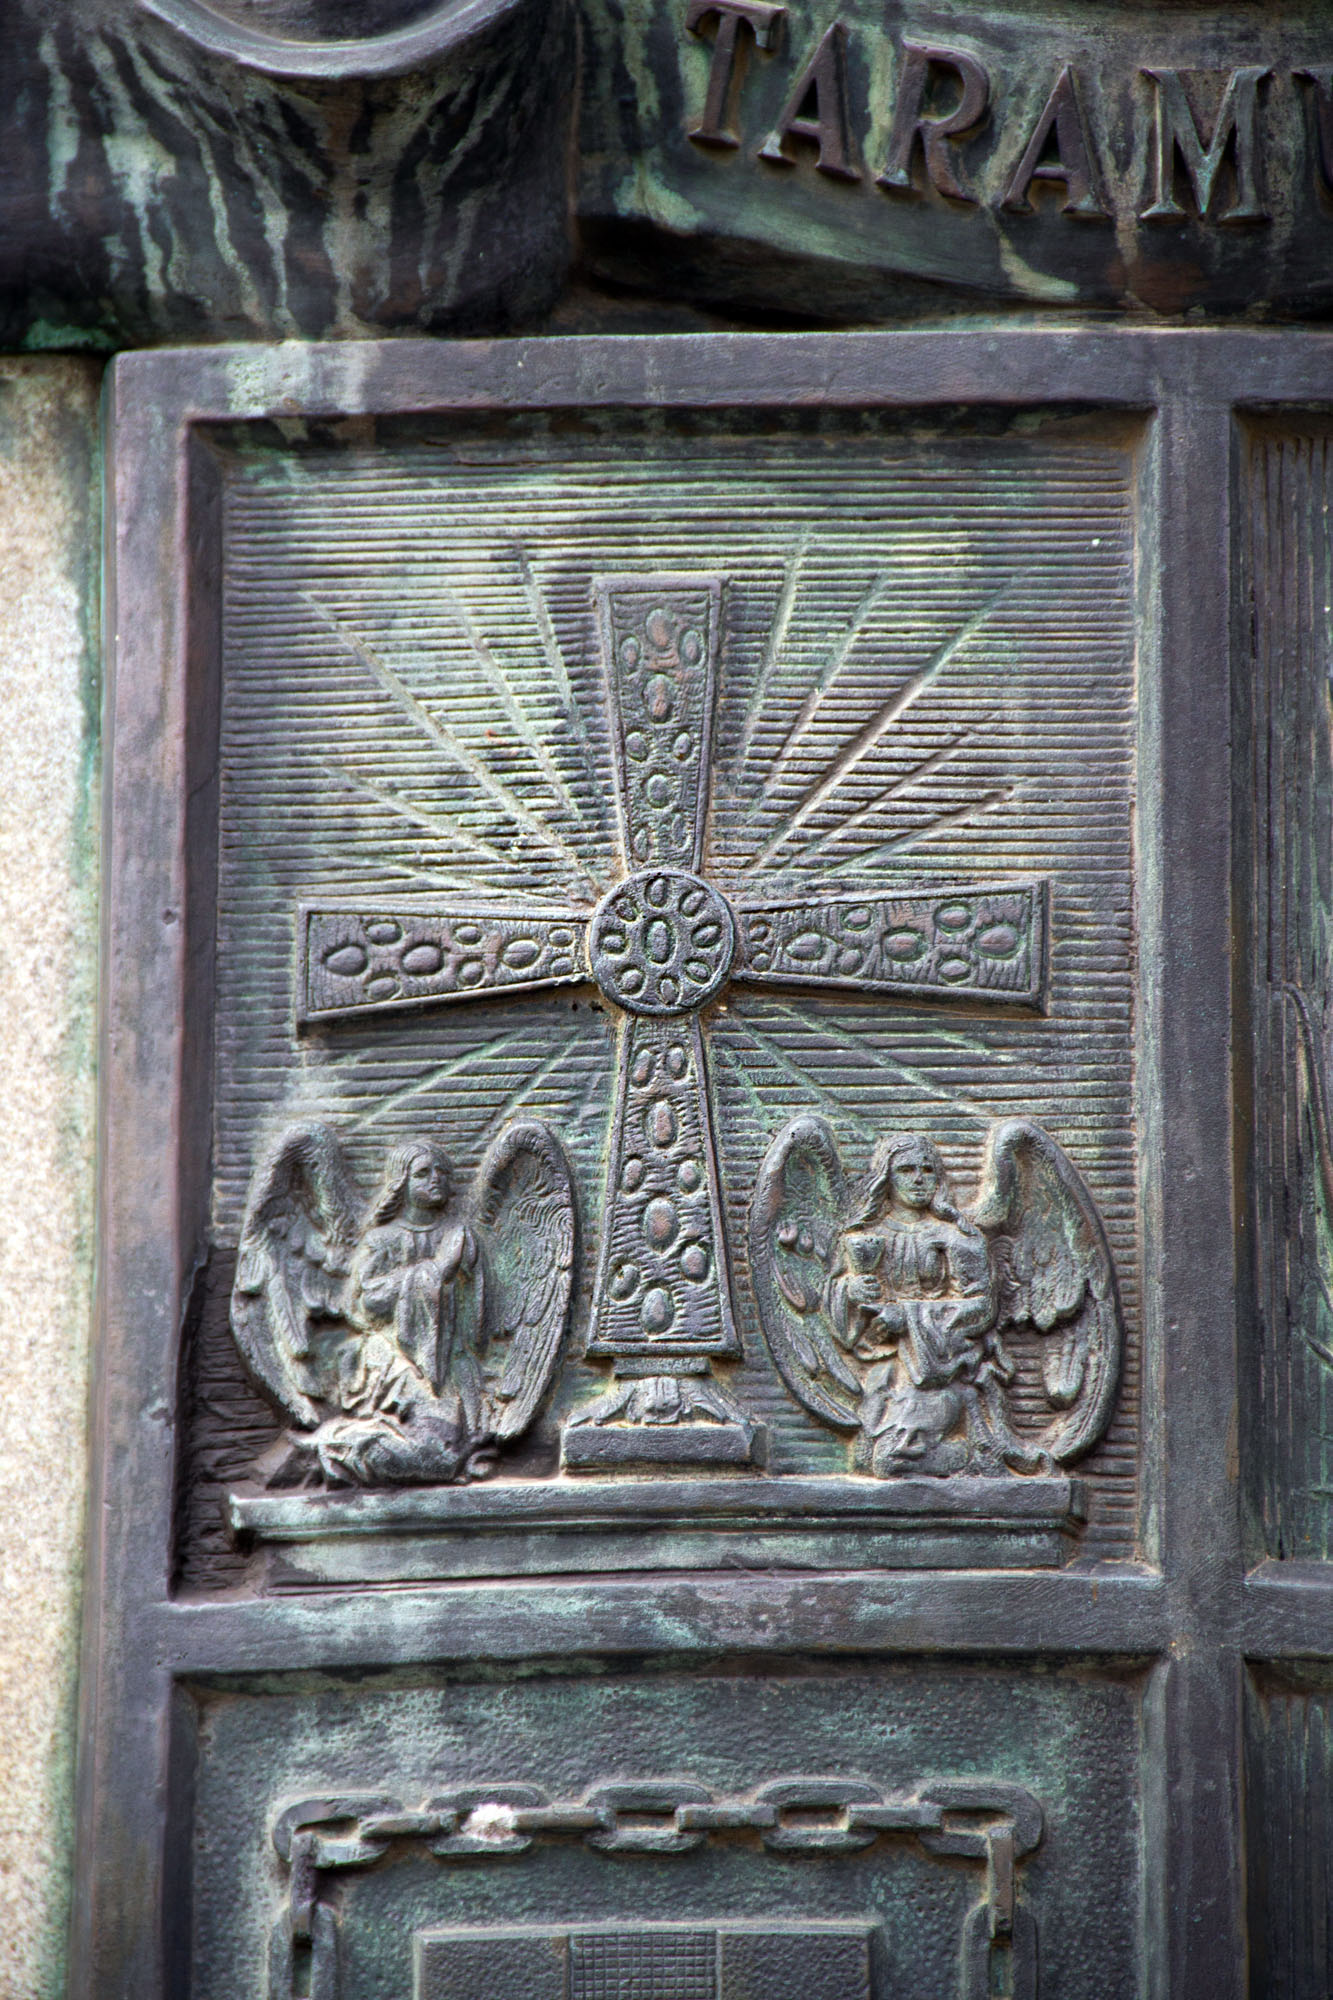 The holy cross of Asturias